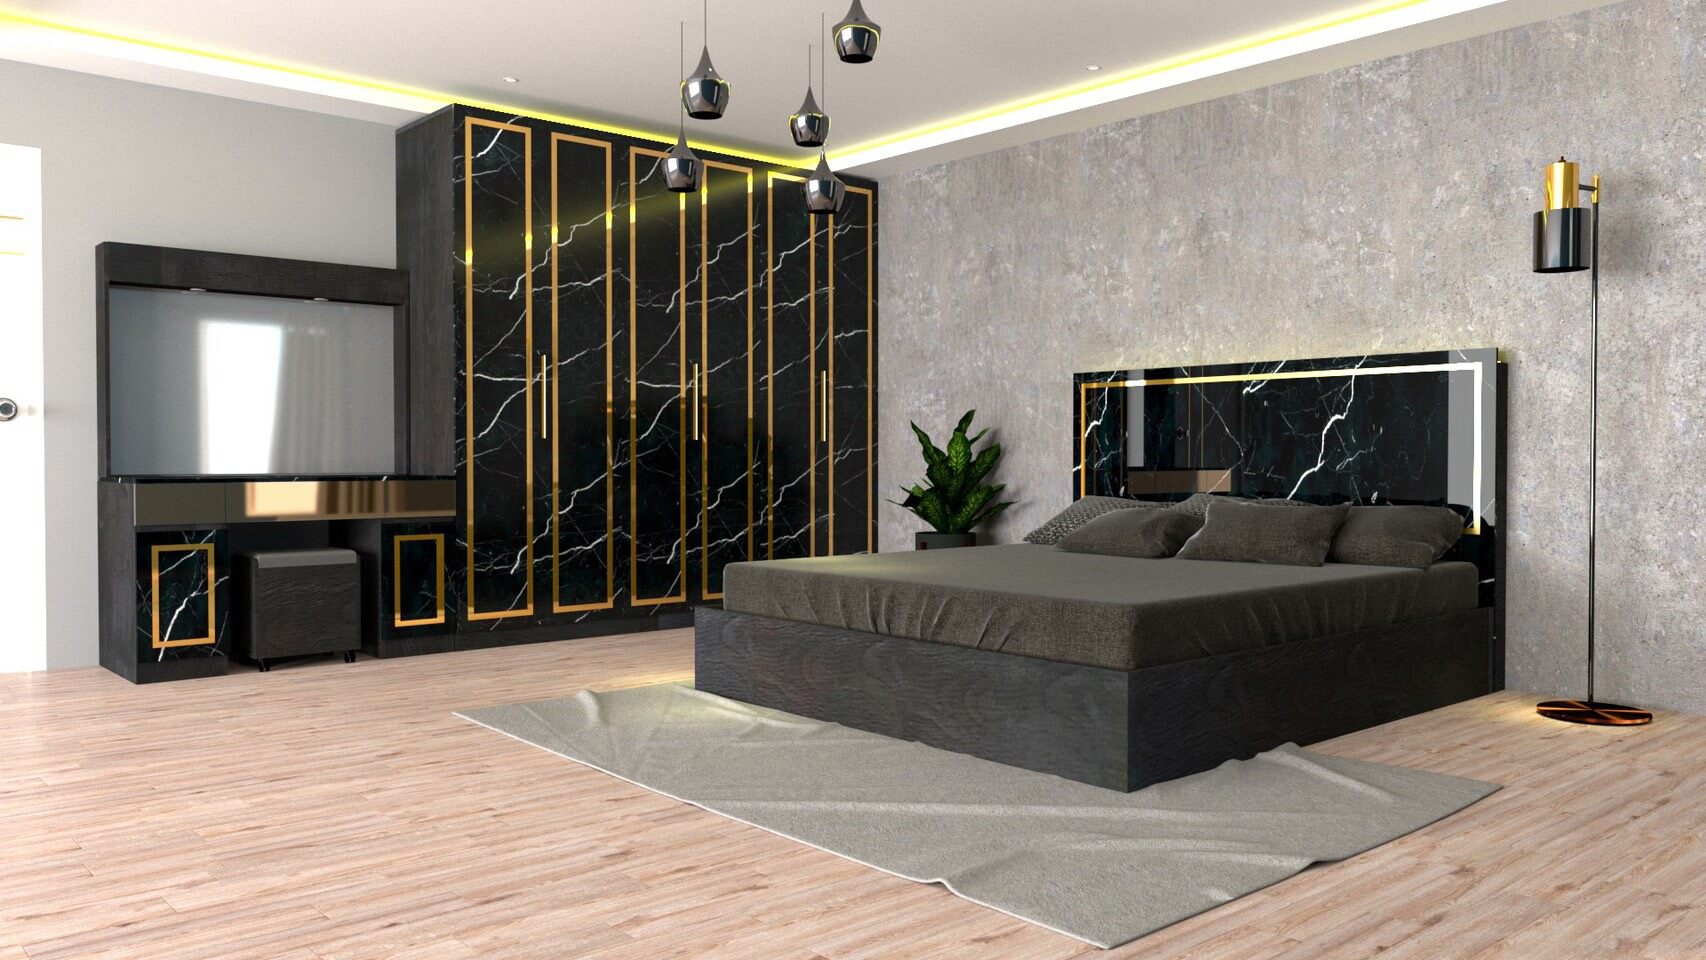 RF Furniture ชุดห้องนอน 6ฟุต รุ่น Jessica A บานทึบ ( เตียง 6ฟุต +ตู้หัวเตียง 2ข้าง+โต๊ะแป้ง 120 ซม.+ตู้เสื้อผ้า 2.40ม. +ที่นอนสปริง 6ฟุต ) Bedroom Set สี AG/DM/GL